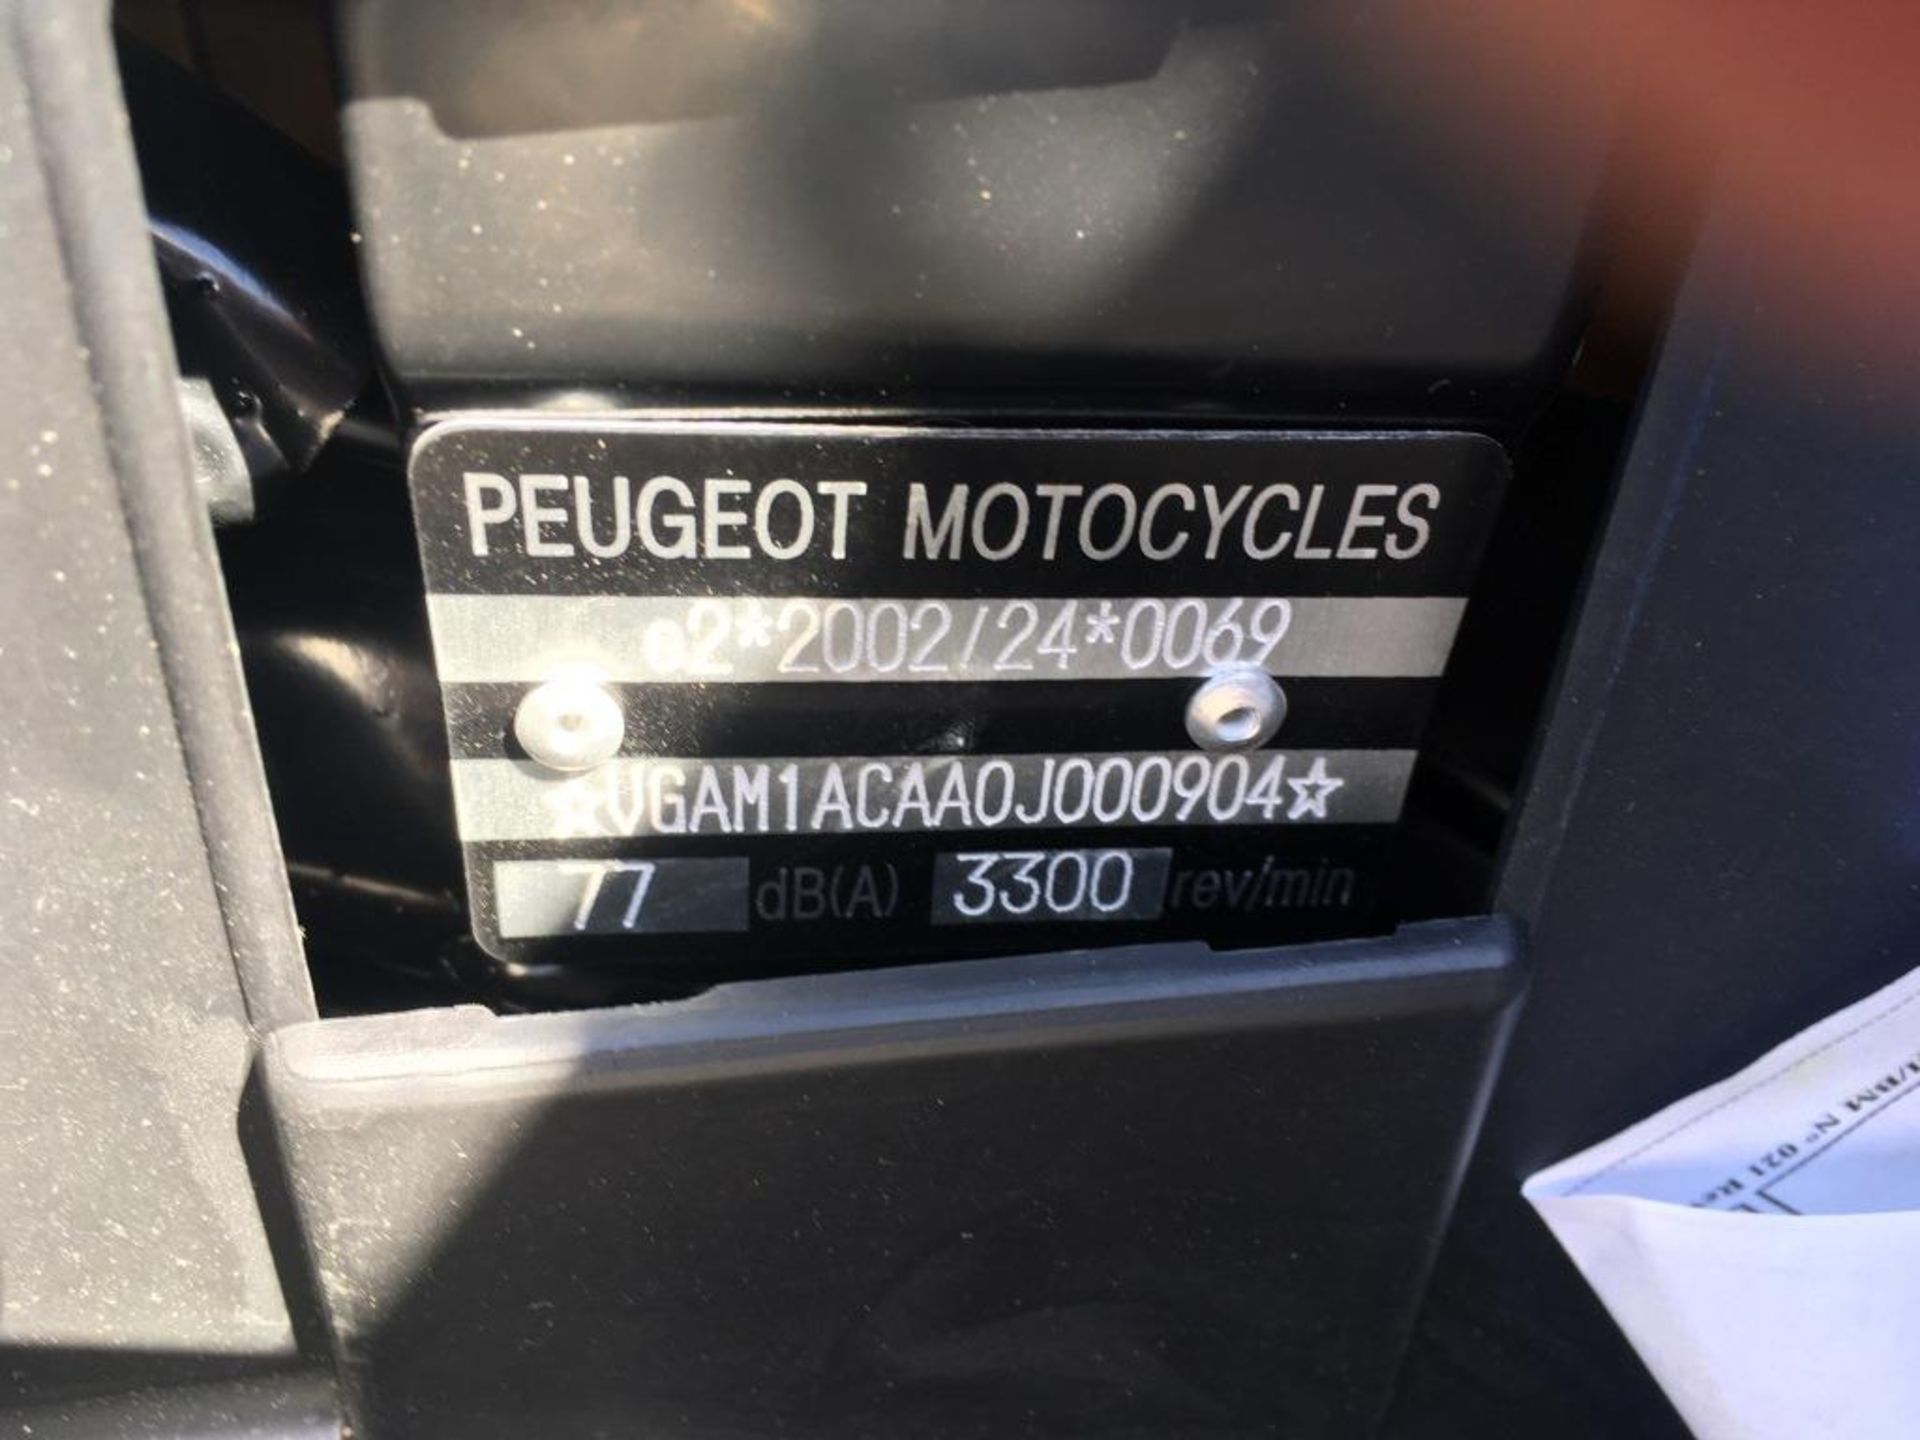 Peugeot Django 50 ID 2T moped, Registration number: HG69 CTX (no V5 held), Date of Registration: - Image 5 of 15